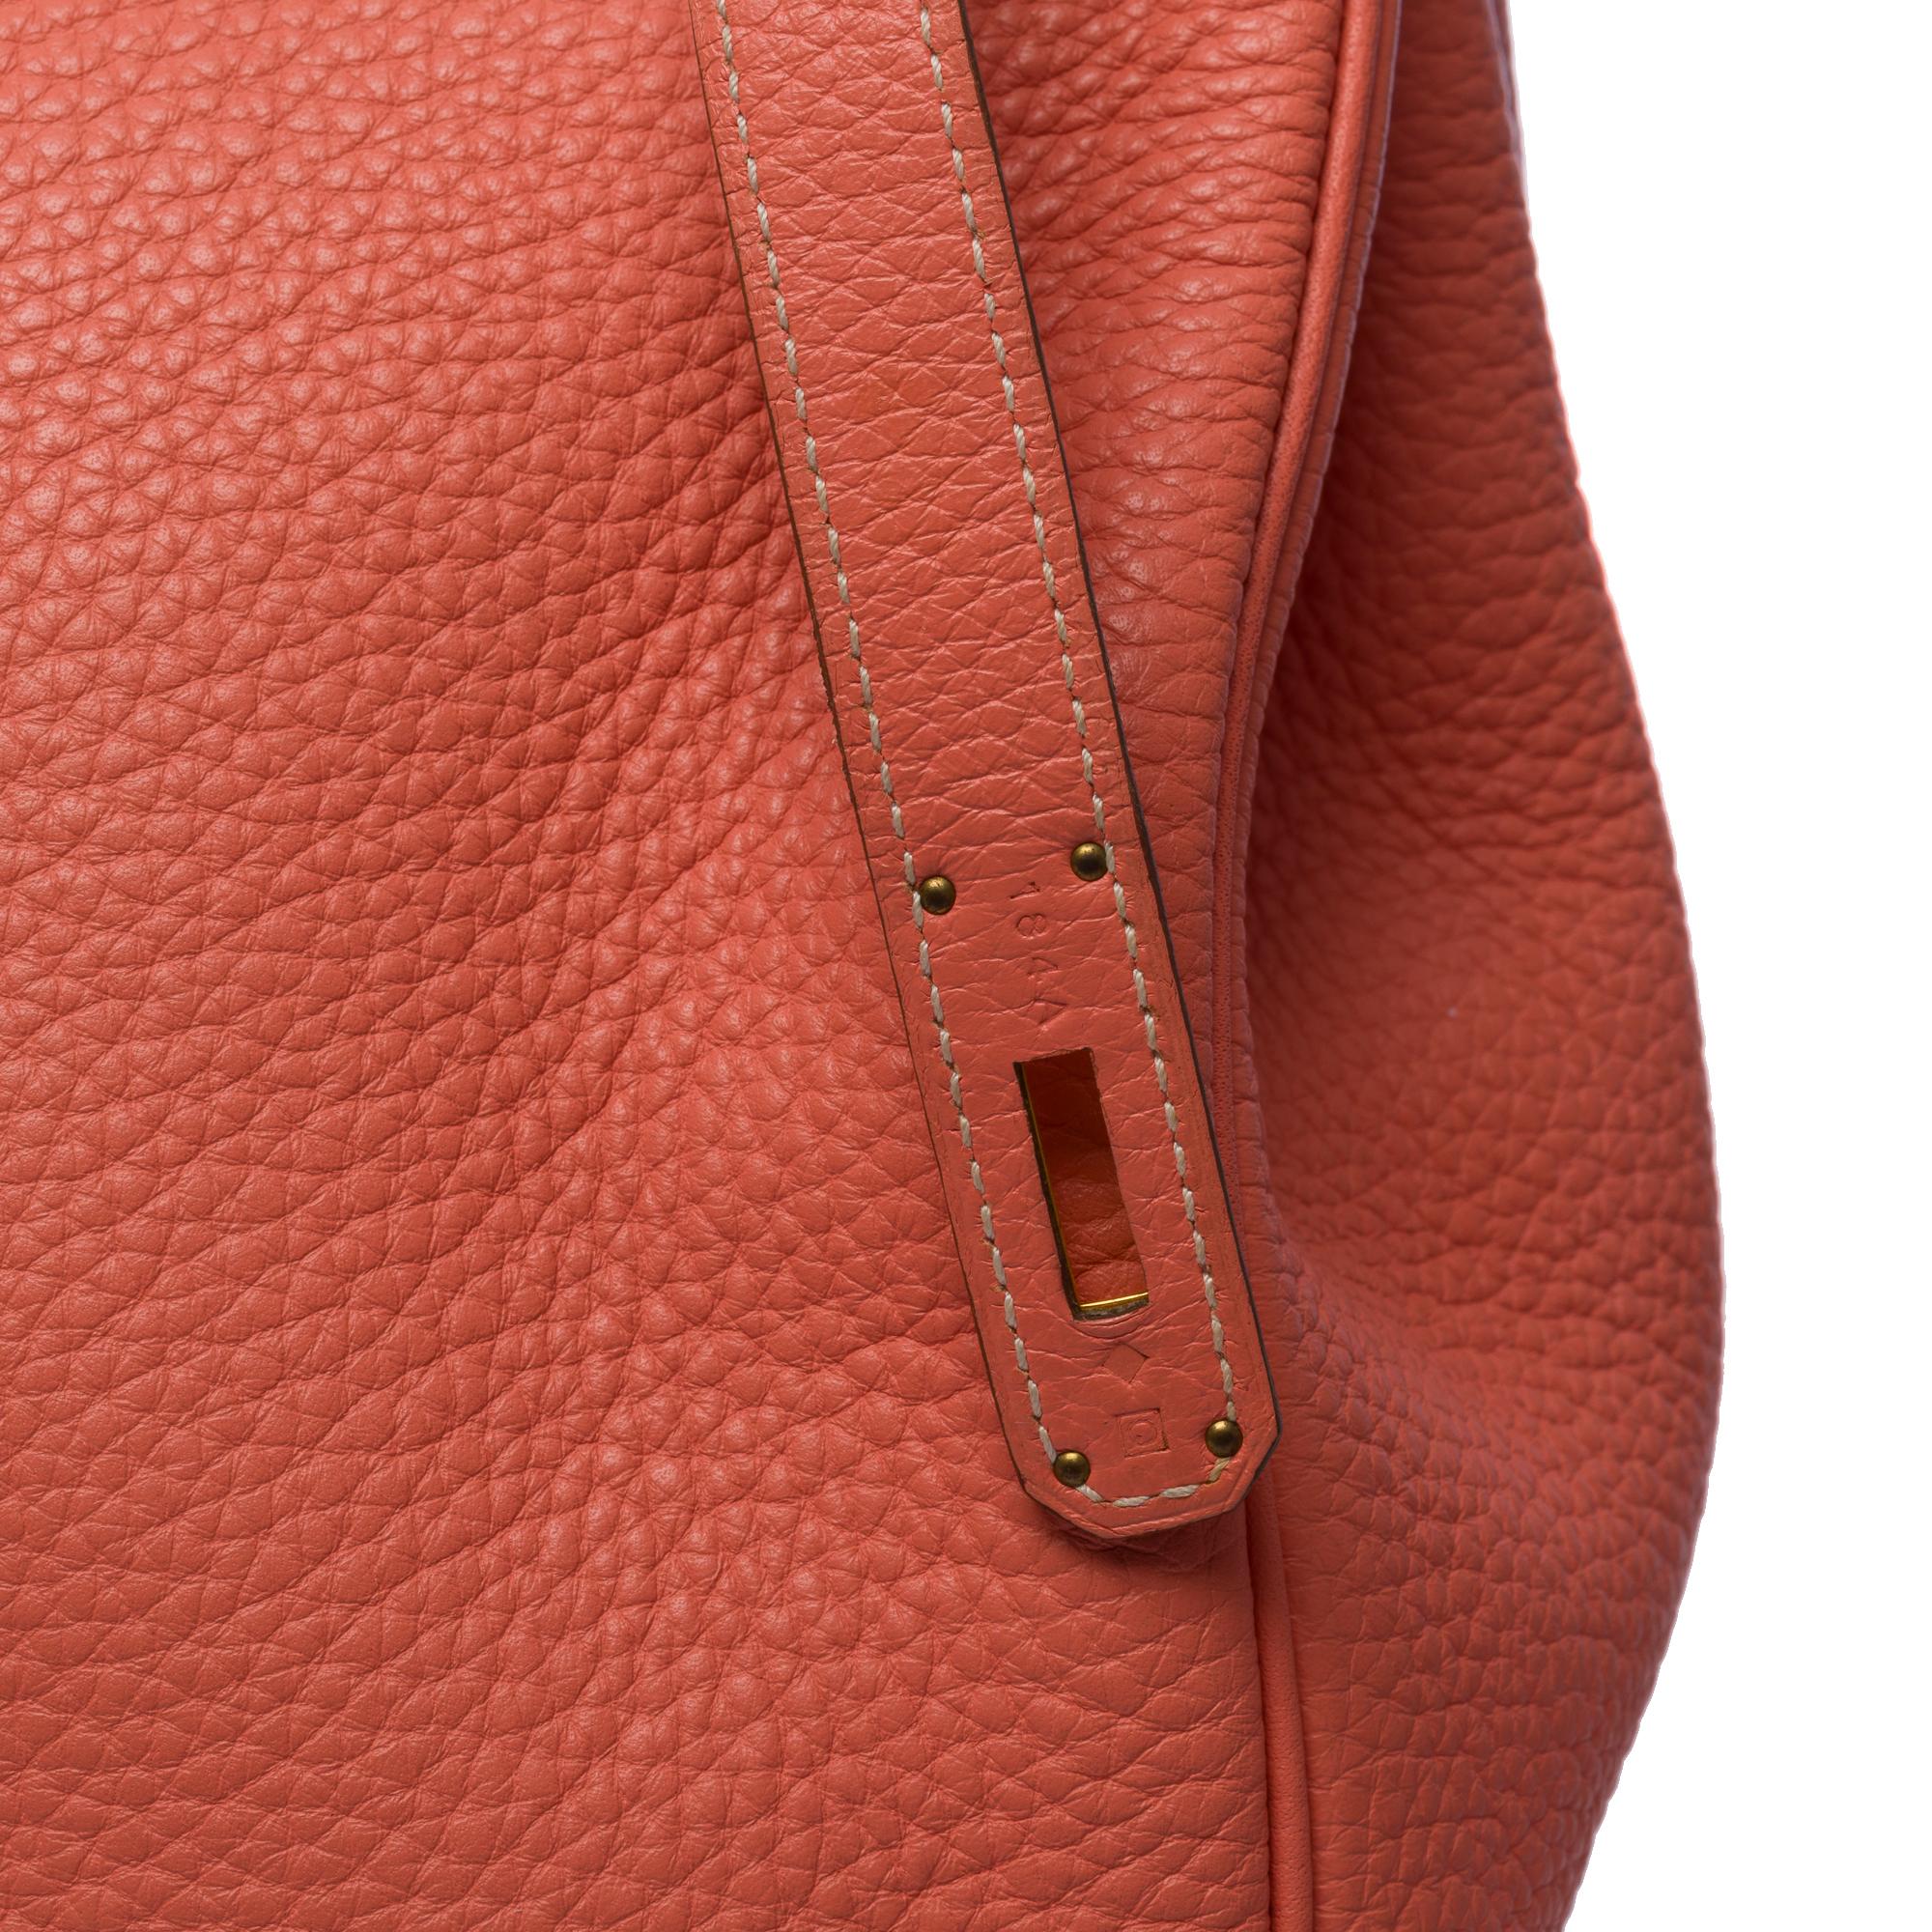 Stunning Hermes Birkin 40cm handbag in Rose Tea Togo leather, GHW For Sale 1